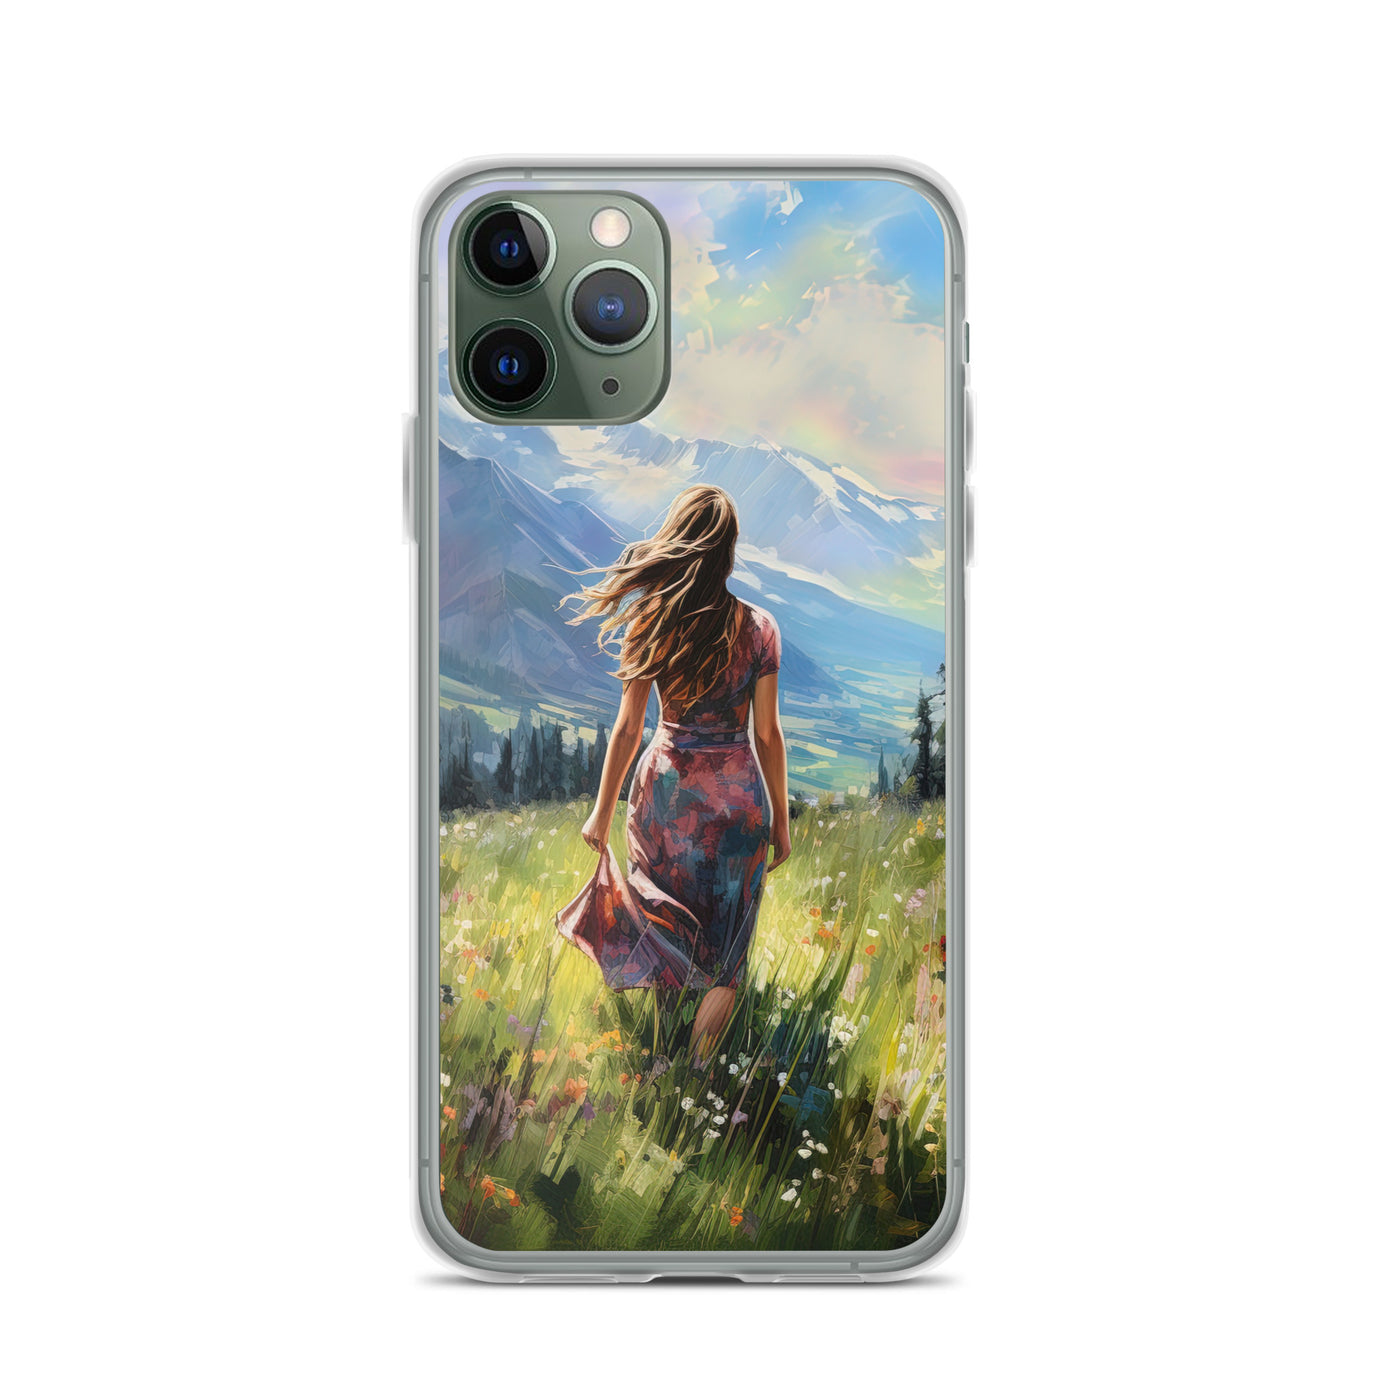 Frau mit langen Kleid im Feld mit Blumen - Berge im Hintergrund - Malerei - iPhone Schutzhülle (durchsichtig) berge xxx iPhone 11 Pro